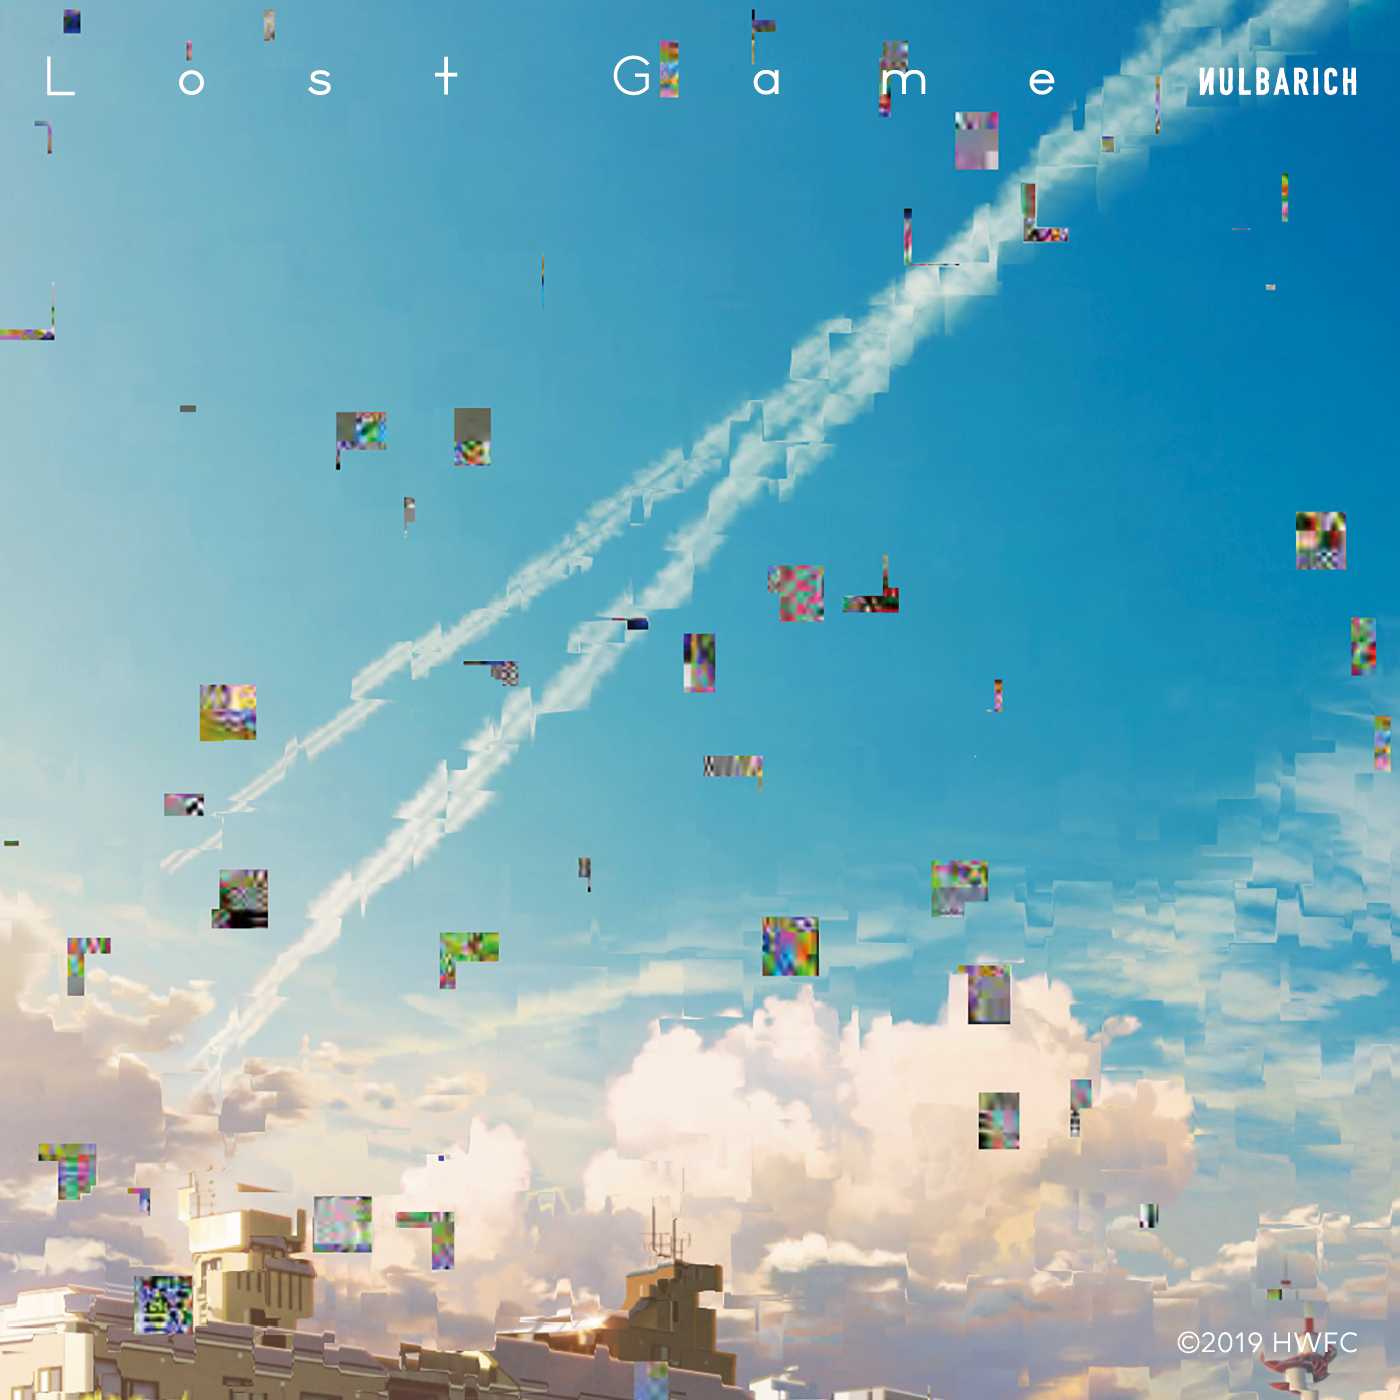 Nulbarich ミニアルバム 2nd Galaxy のジャケット 収録曲 Lost Game のmvを公開 Eyescream